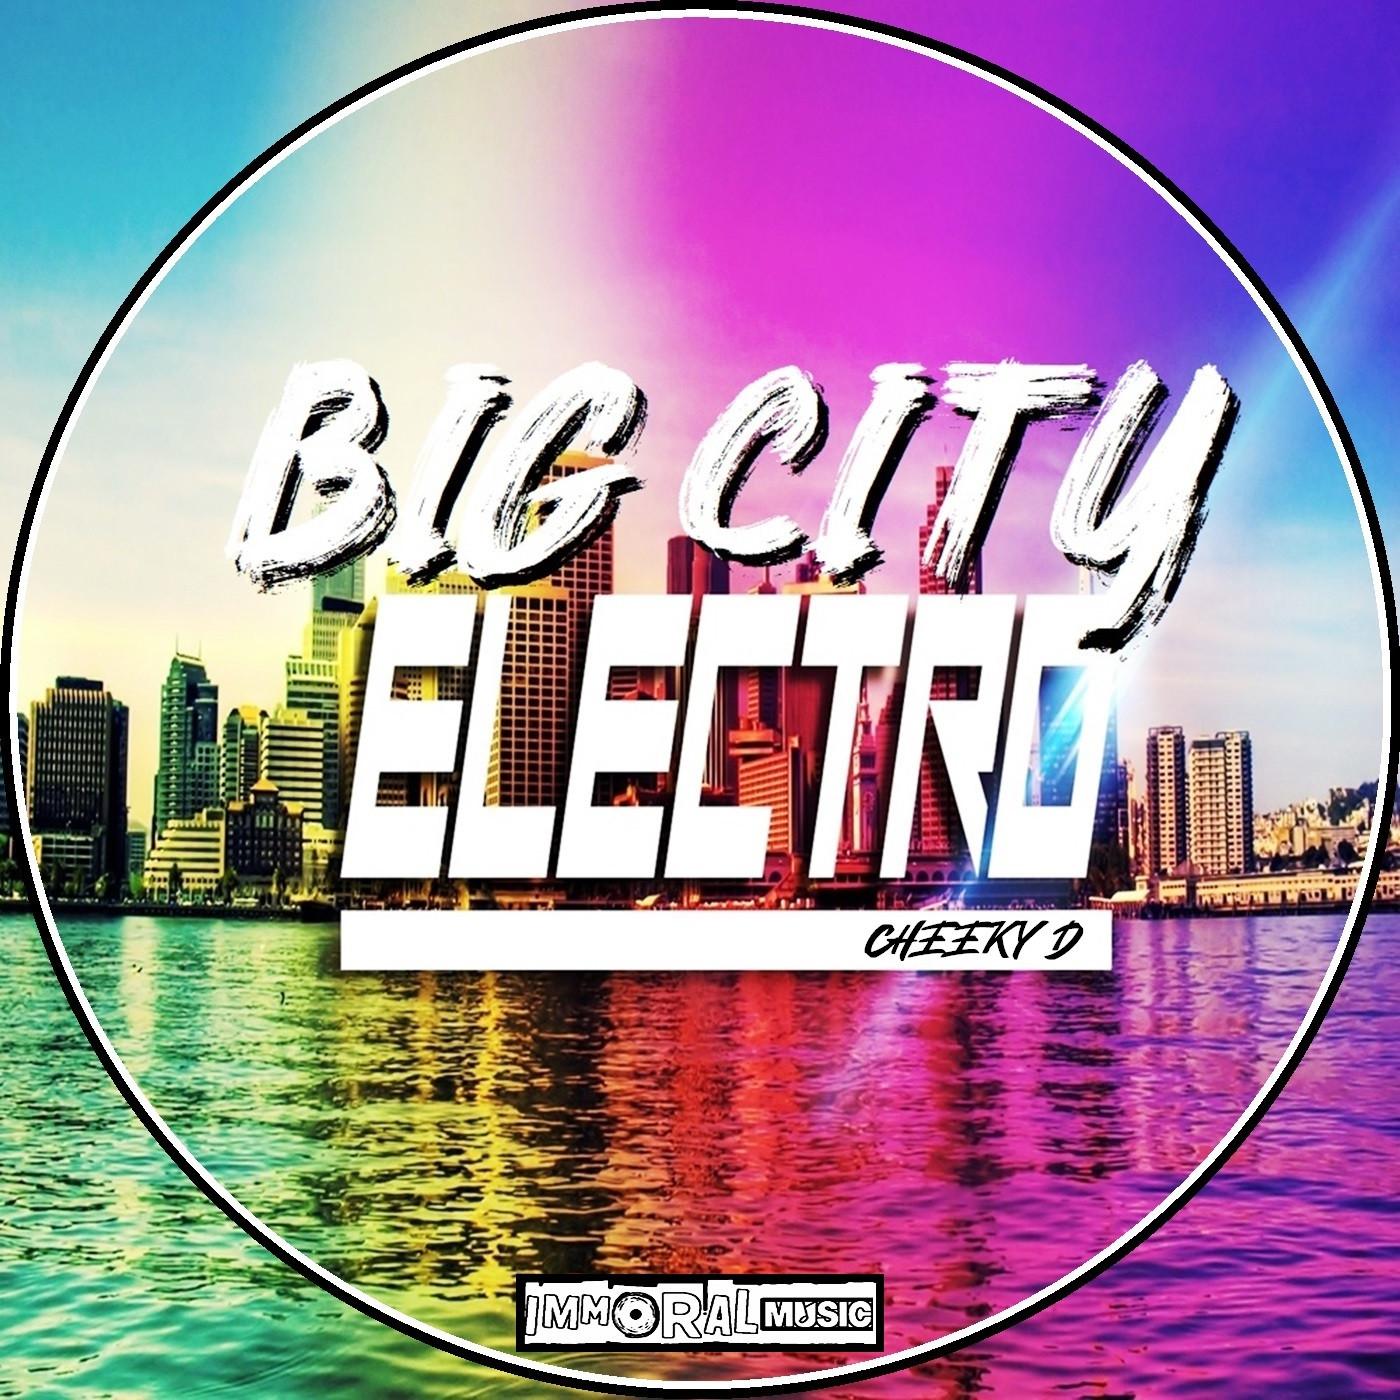 Cheeky D - Big City (Original Mix)